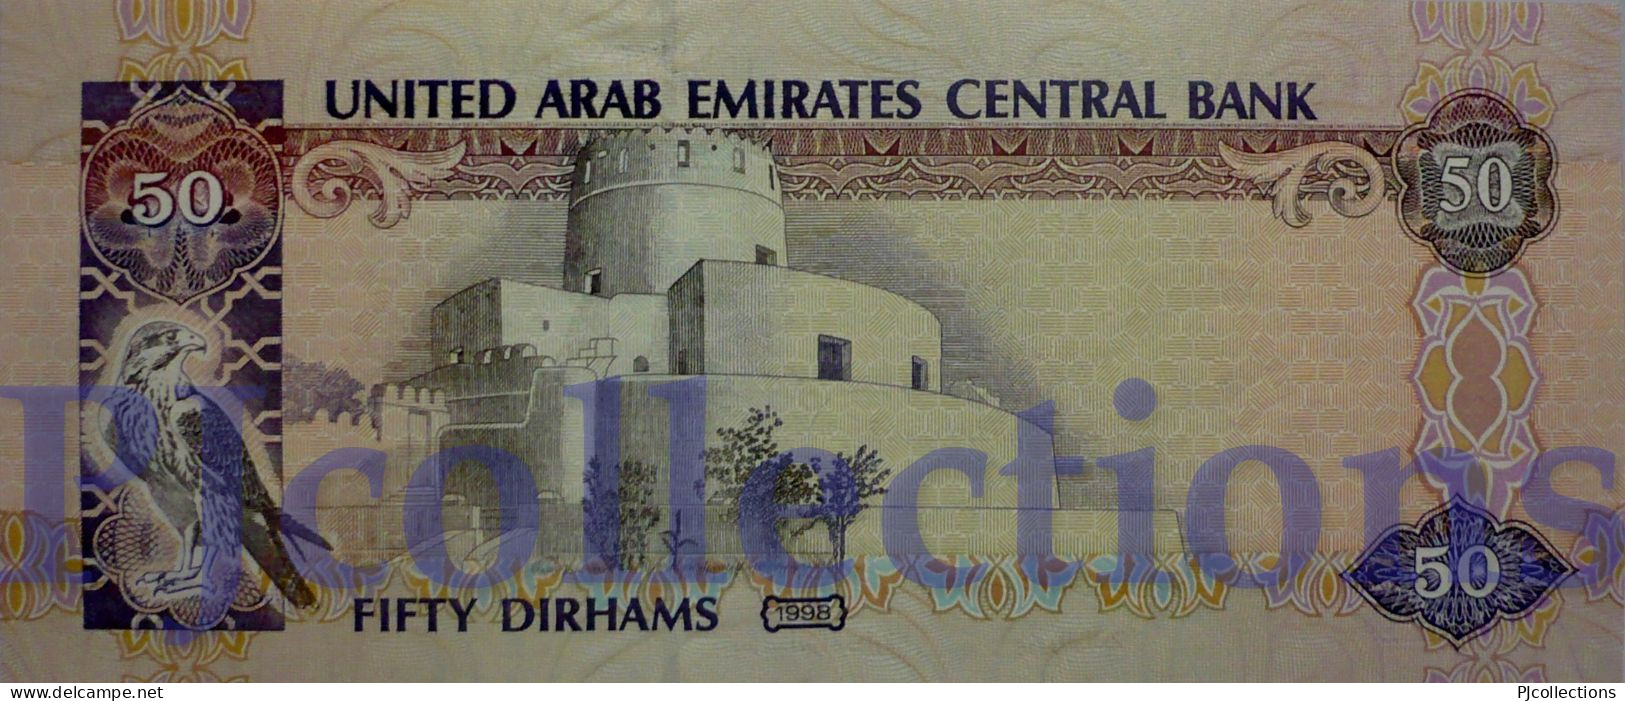 UNITED ARAB EMIRATES 50 DIRHAMS 1998 PICK 22 UNC - Ver. Arab. Emirate